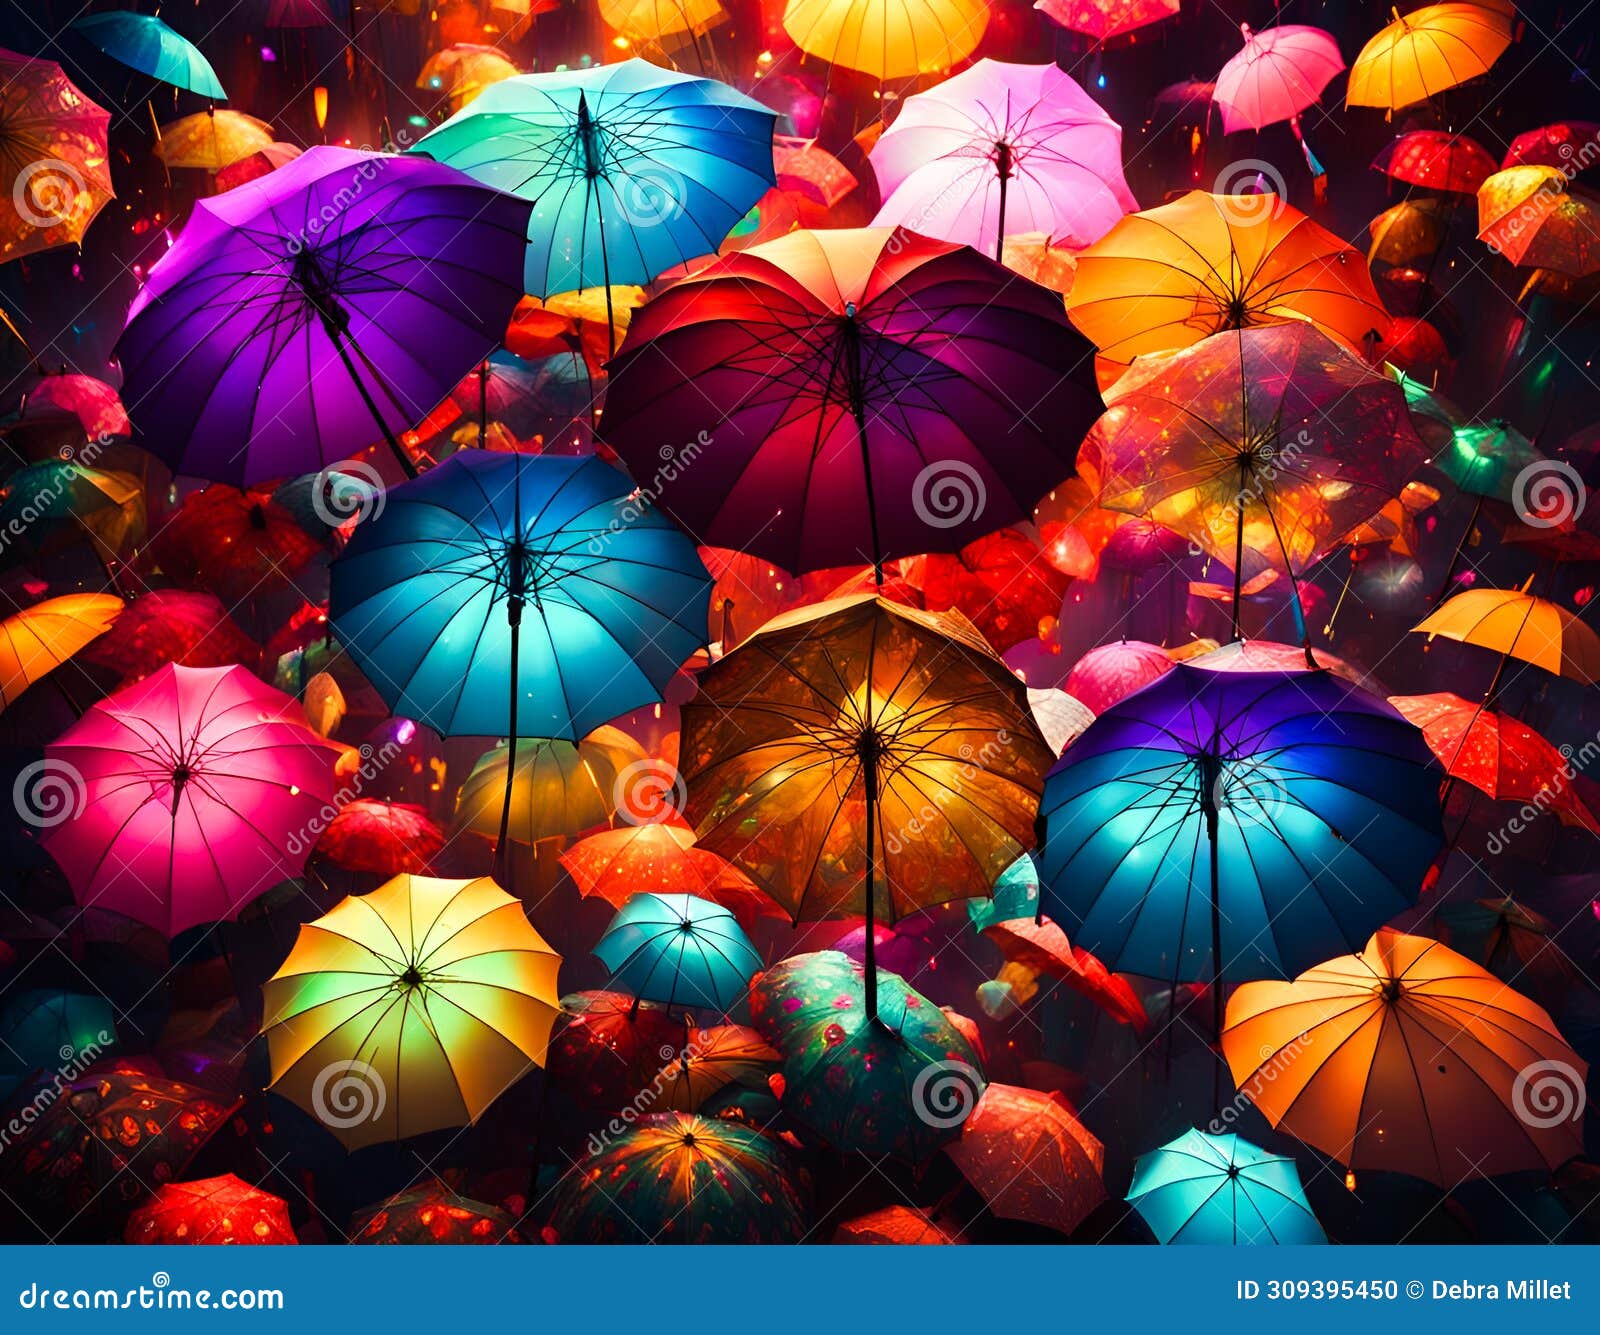 colorful luminescent umbrellas